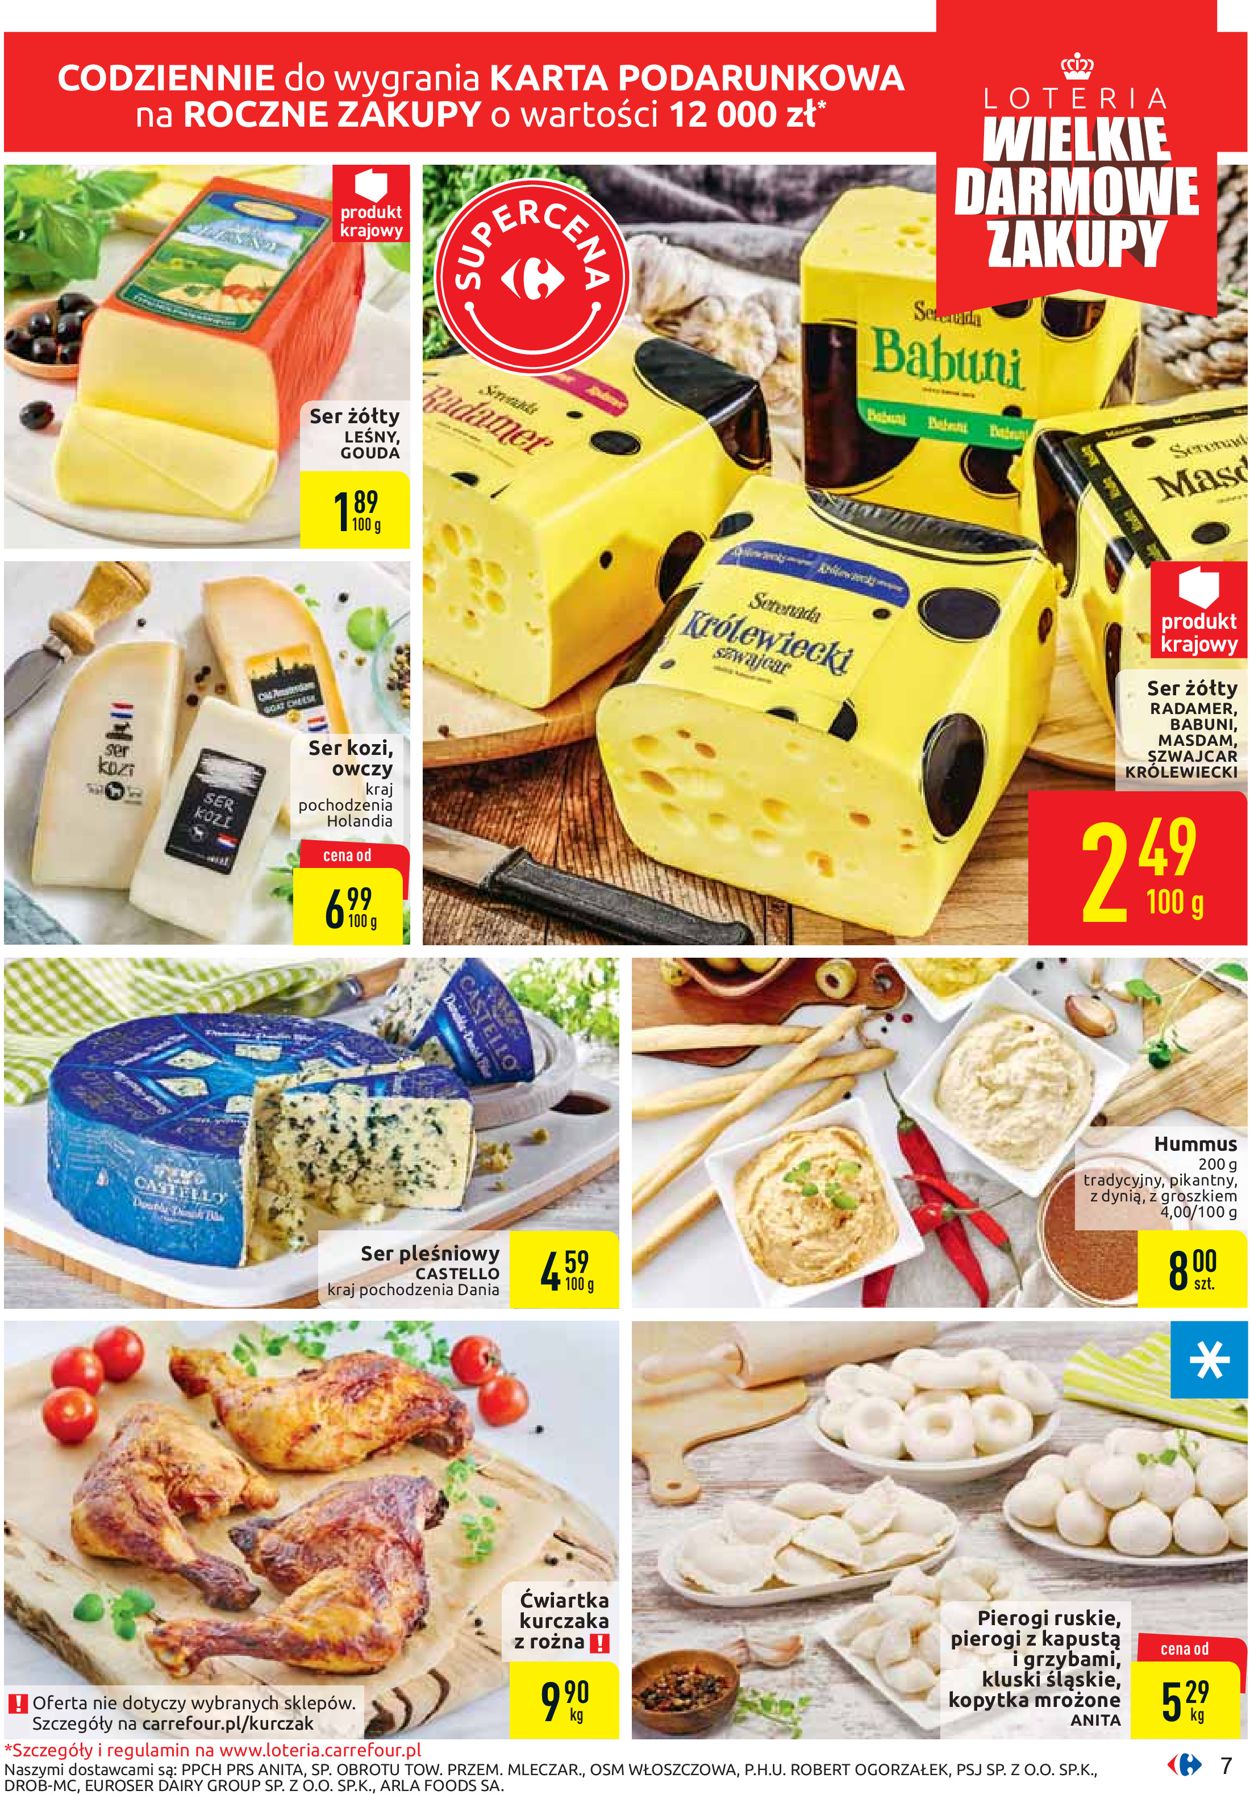 Gazetka promocyjna Carrefour - 01.10-05.10.2019 (Strona 7)